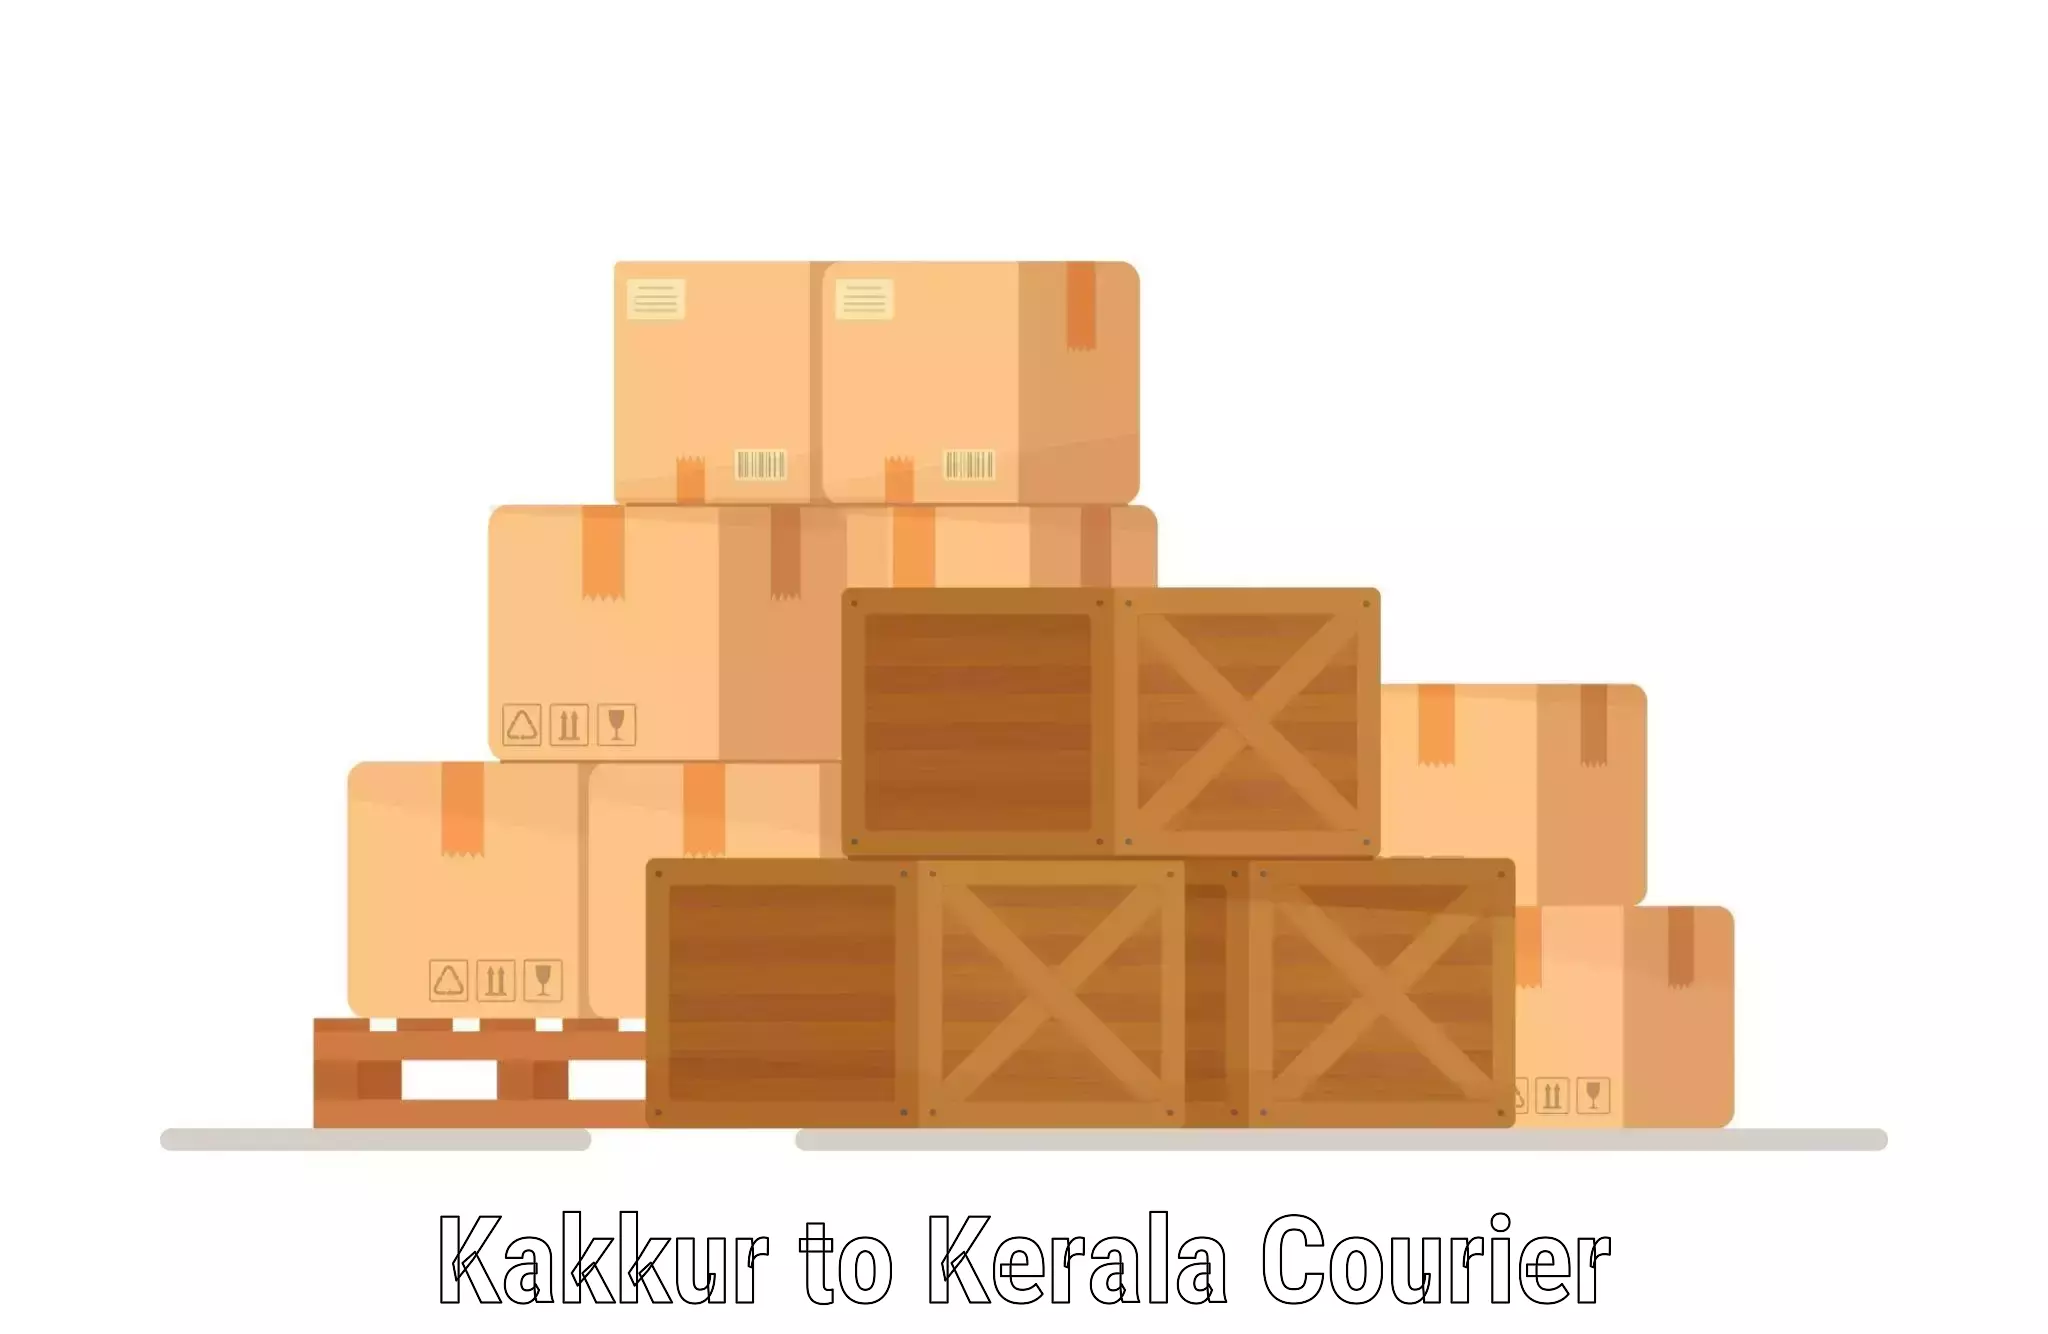 Reliable logistics providers Kakkur to Kerala